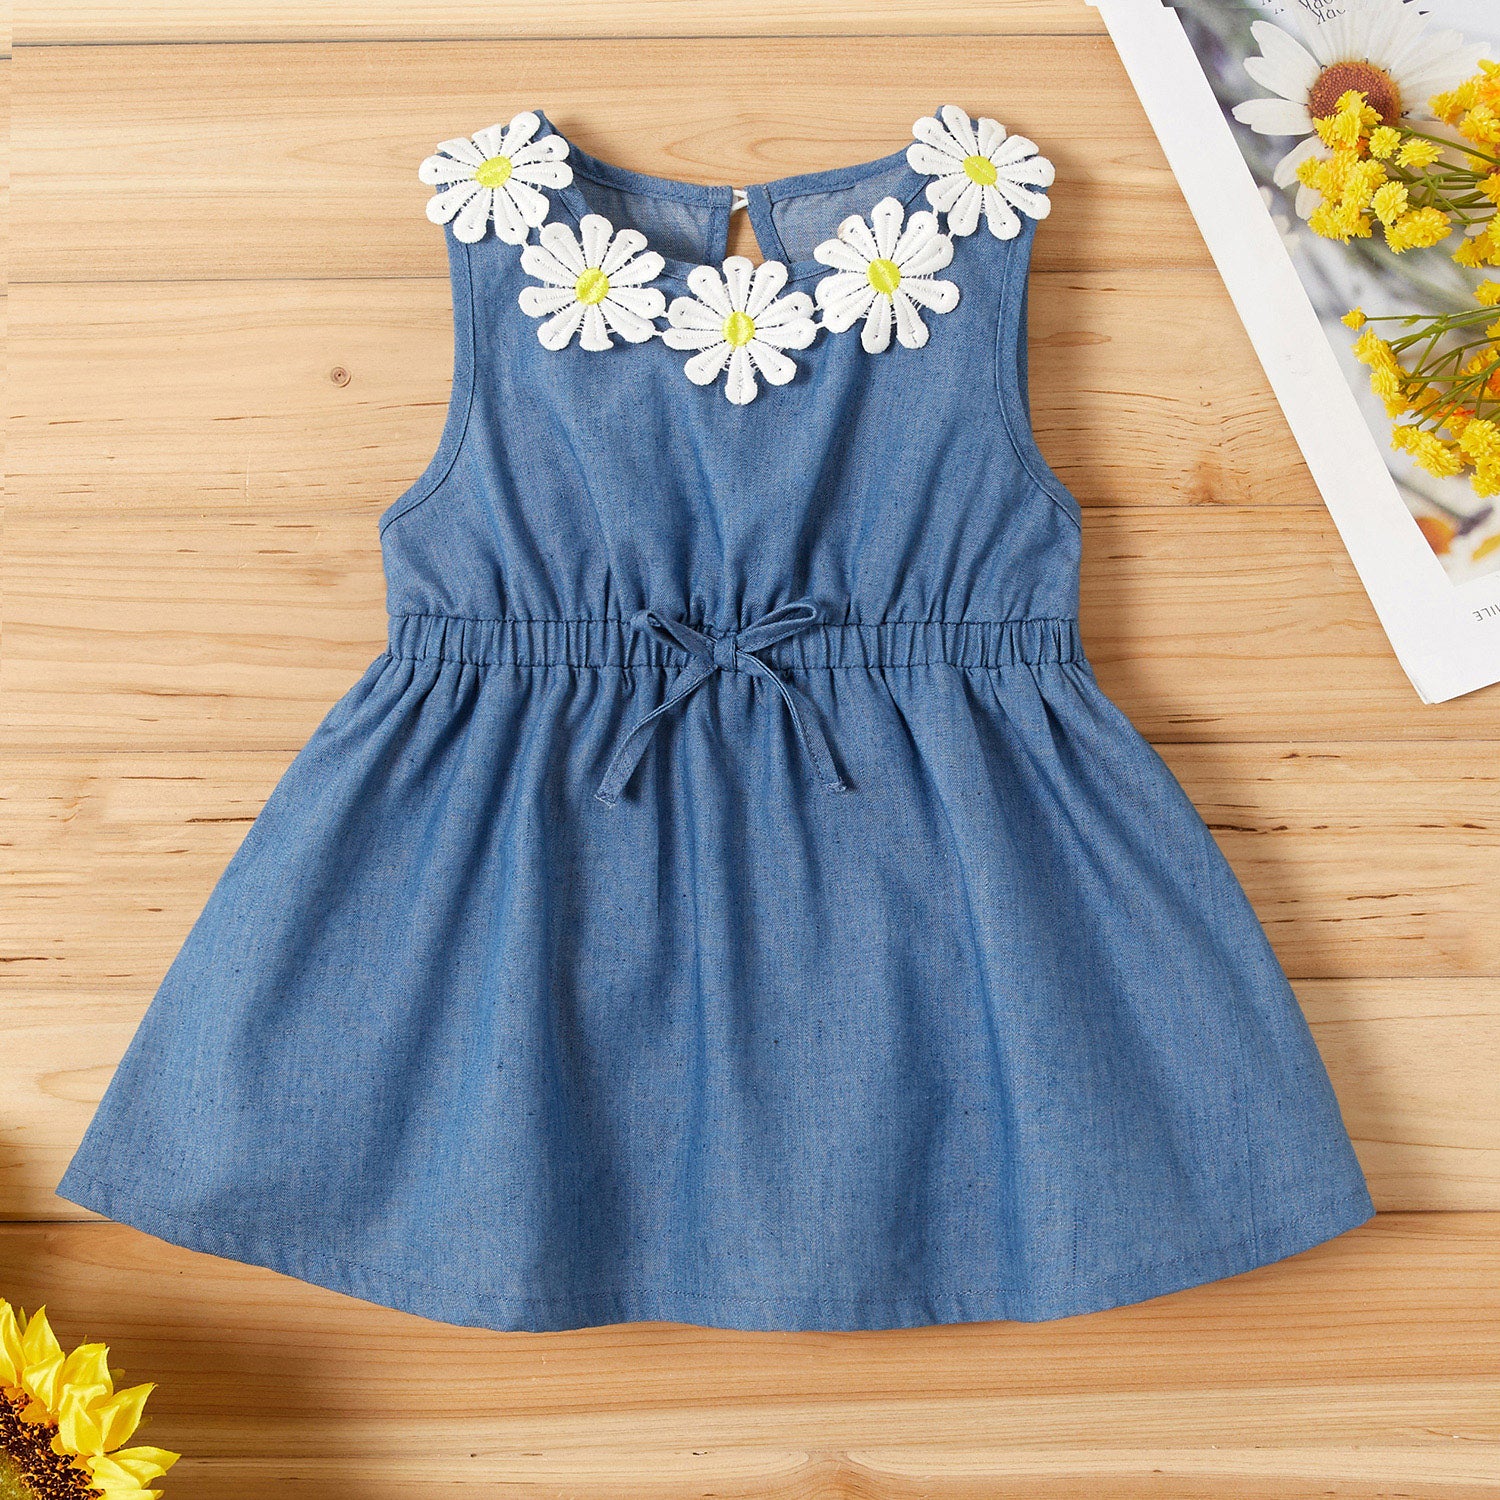 Baby / Toddler Sunflower Decor Denim Sleeveless Dress